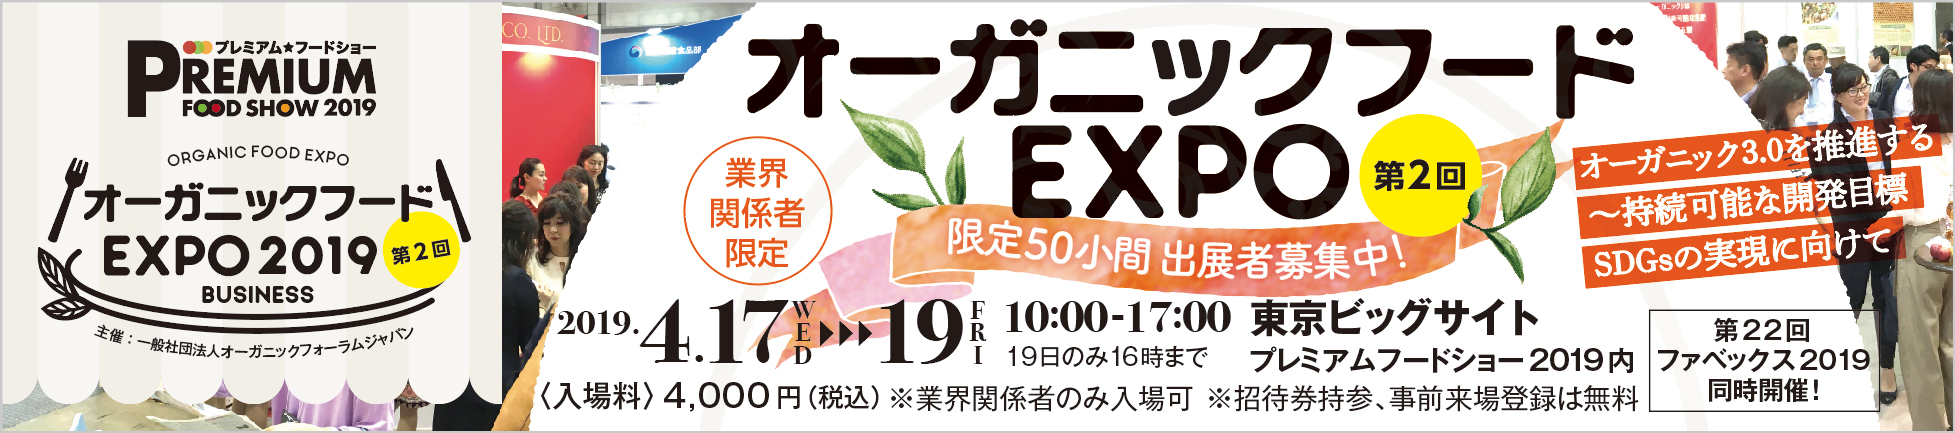 Organic Food Expo 2019 第2回 オーガニックフード EXPO